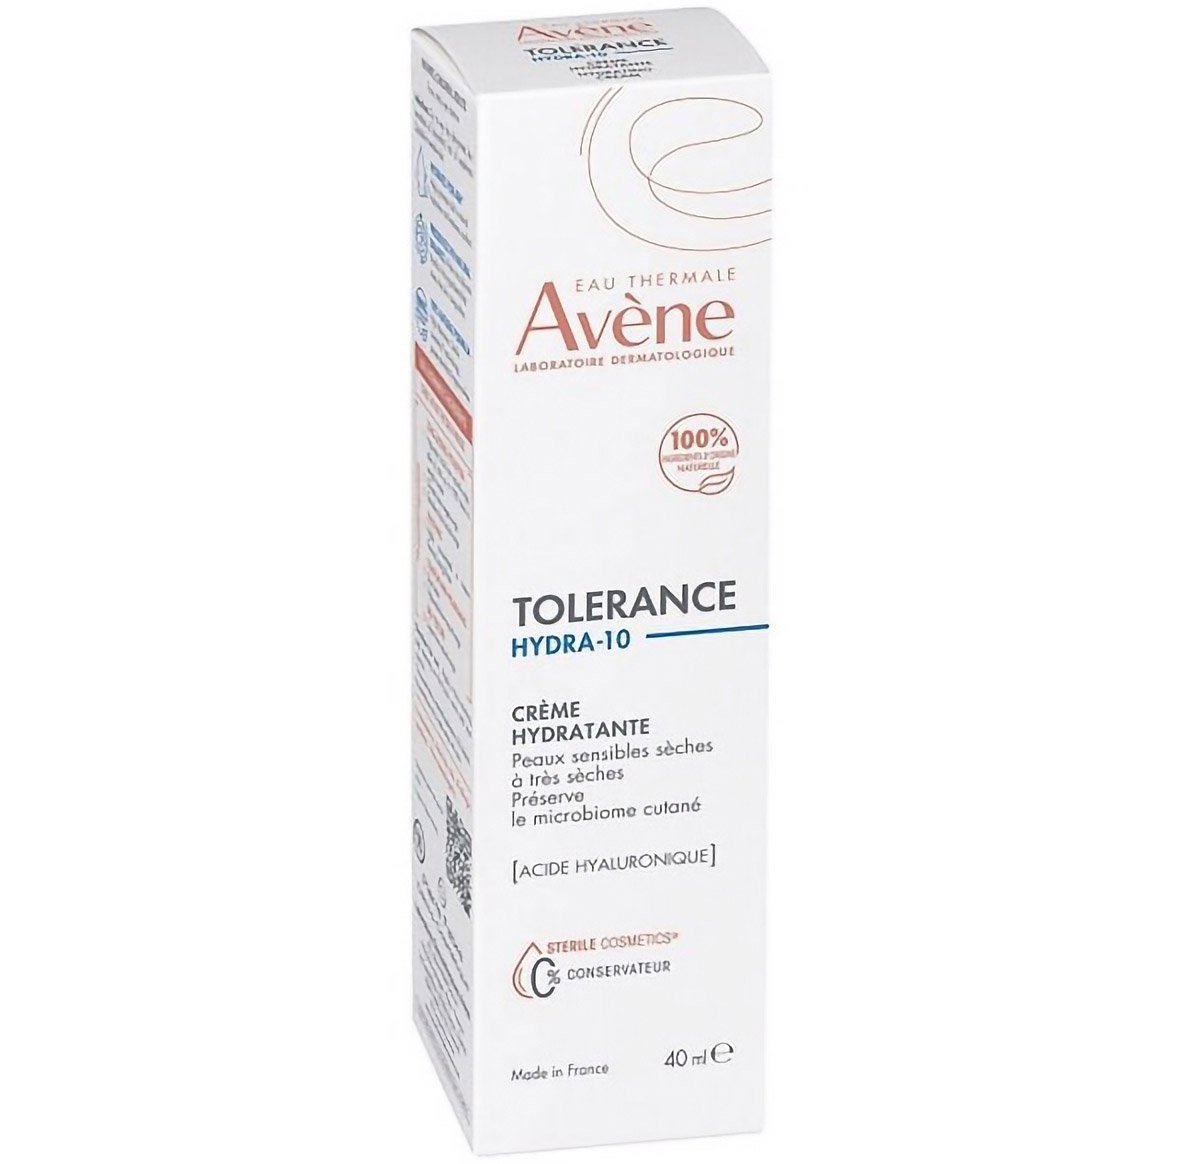 Зволожуючий крем для обличчя Avene Tolerance Hydra-10, для сухої та нормальної шкіри, 40 мл - фото 2